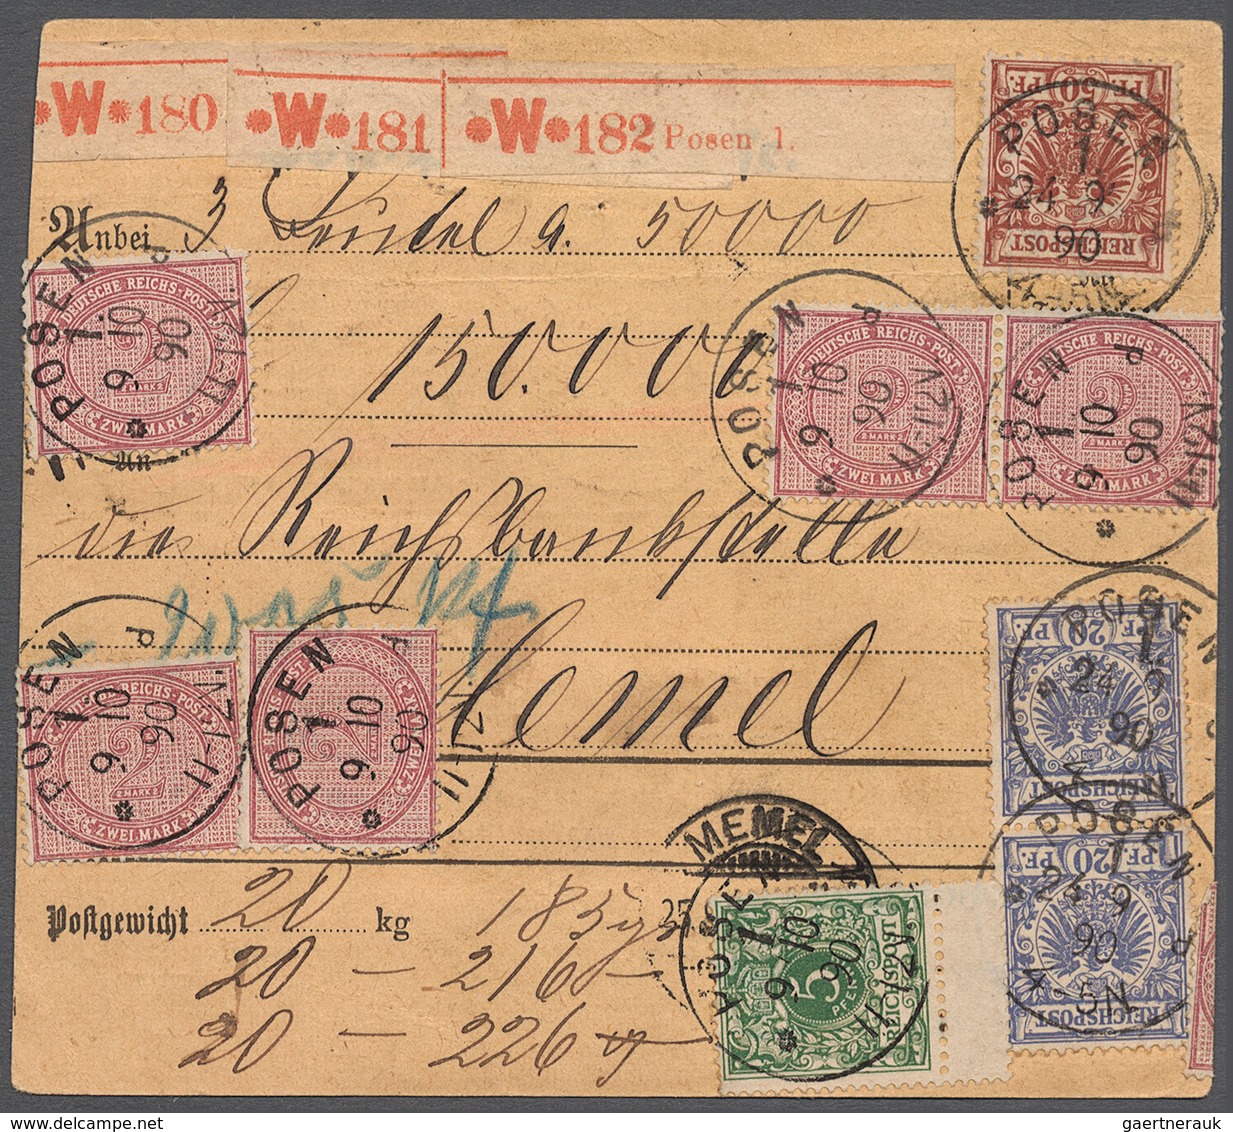 Deutsches Reich - Pfennige: 1890, Stammteil Einer Paketkarte Für Drei Pakete Mit Wertangabe 150.0000 - Lettres & Documents